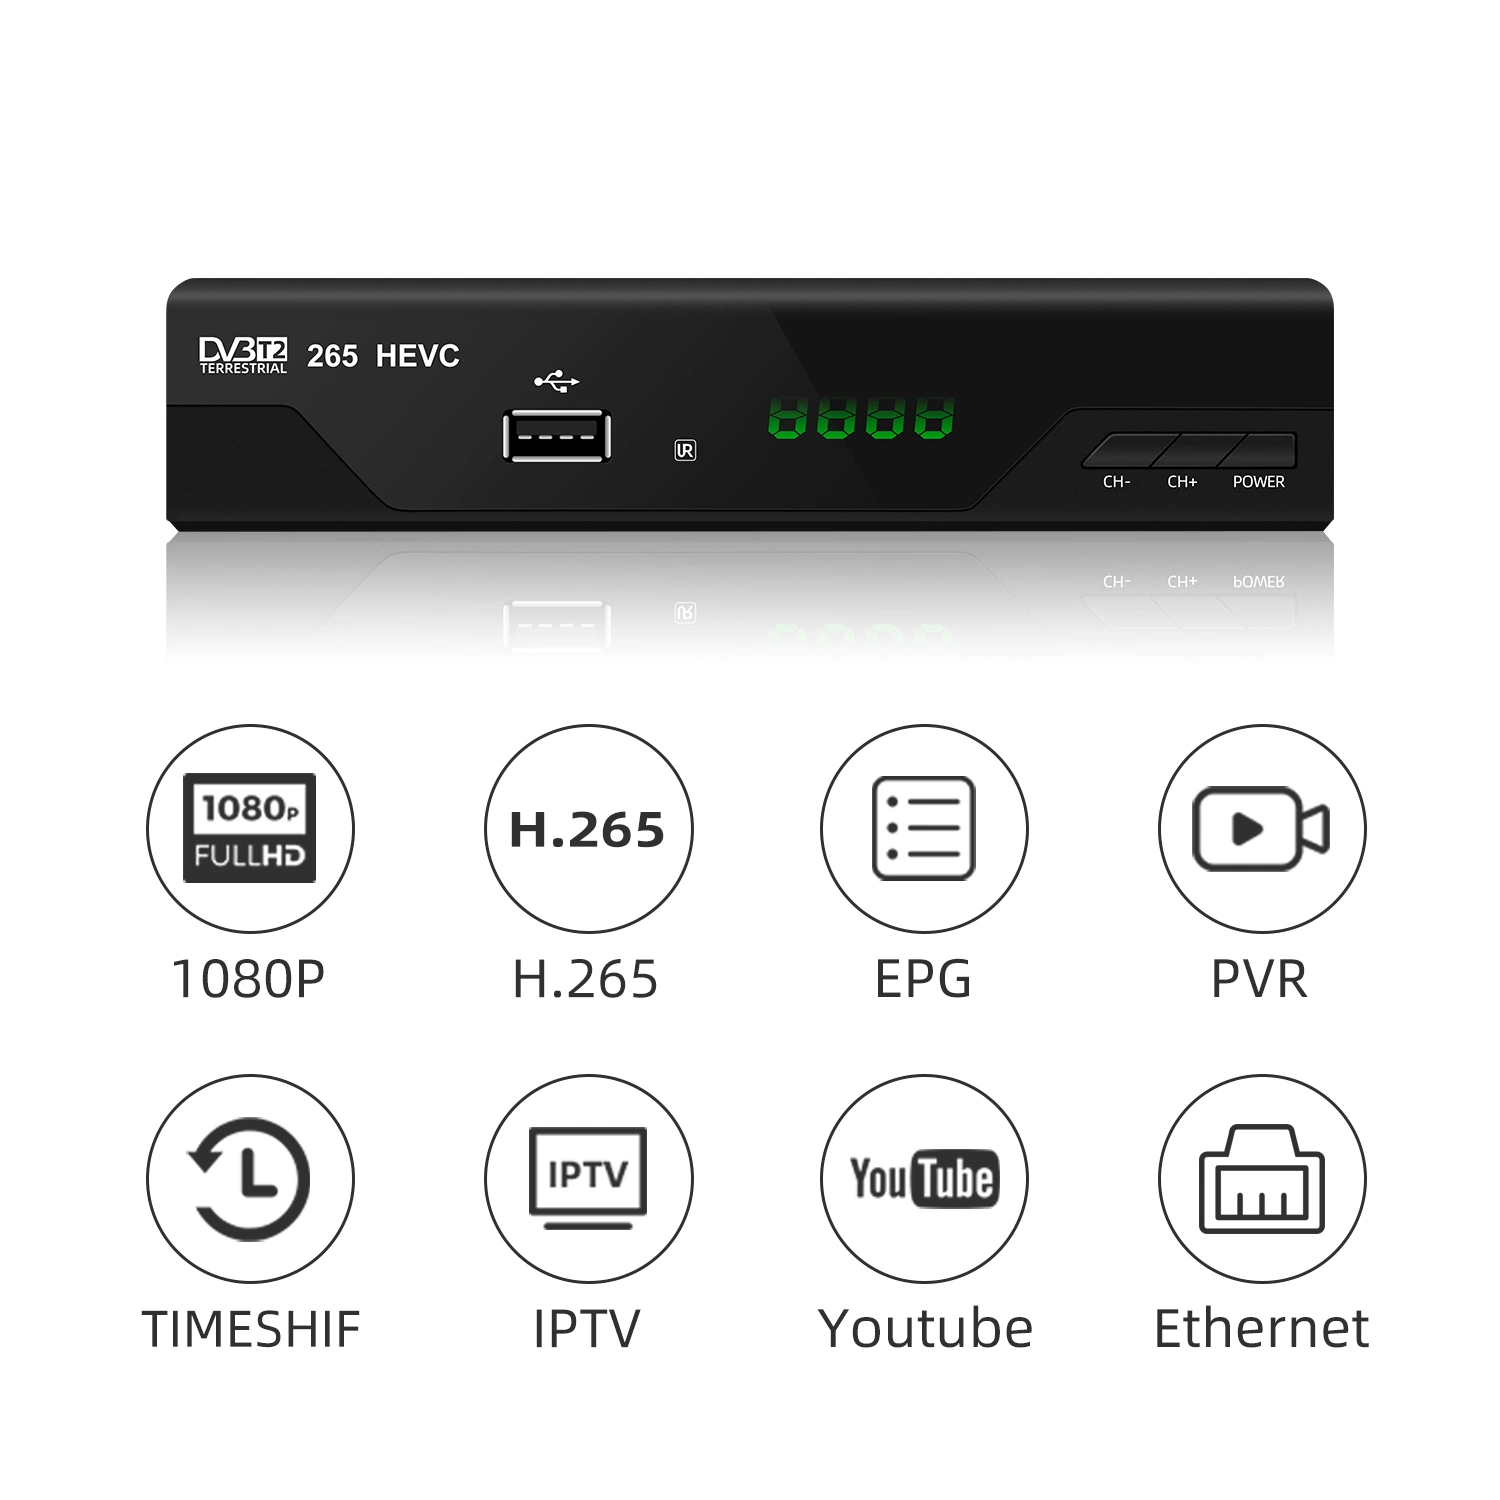 Czech DVB-T2 TV Receiver Full HD 1080P Support Hevc H. 265 Decoder